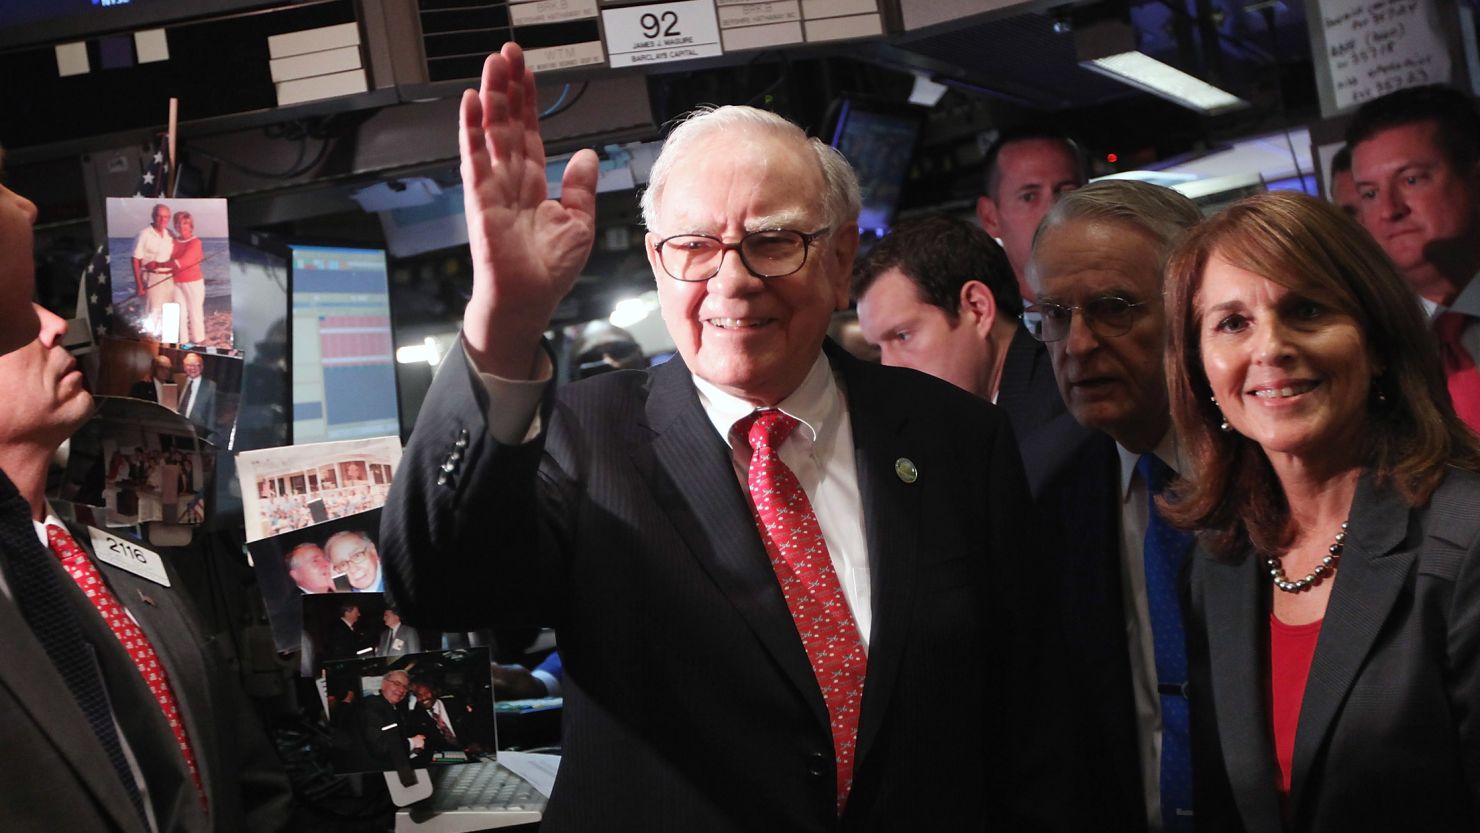  Warren Buffett, head of Berkshire Hathaway, wouldn't really be affected by the "Buffett Rule," says Edward J. McCaffery.  